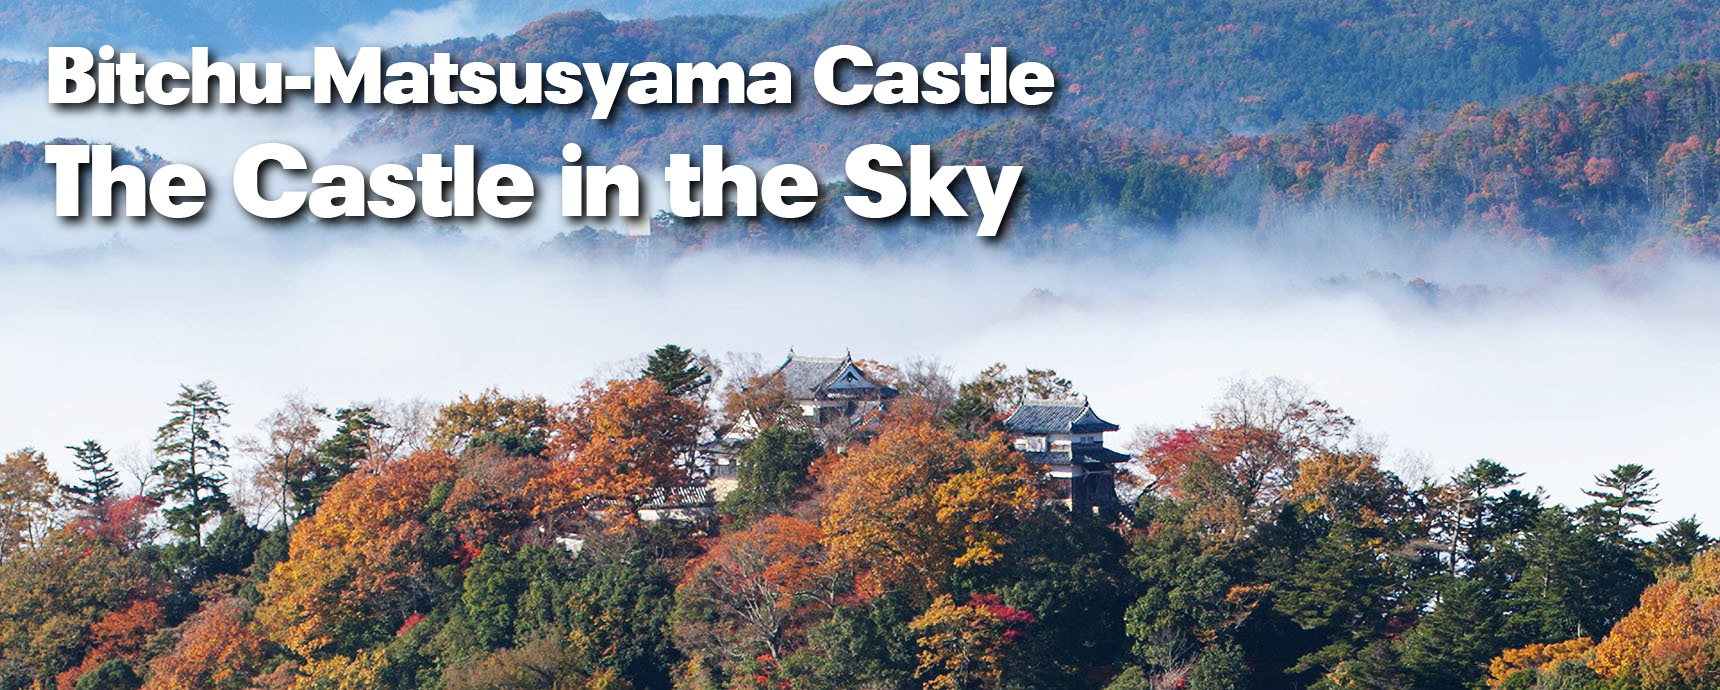 Bitchu-matsuyama Castle